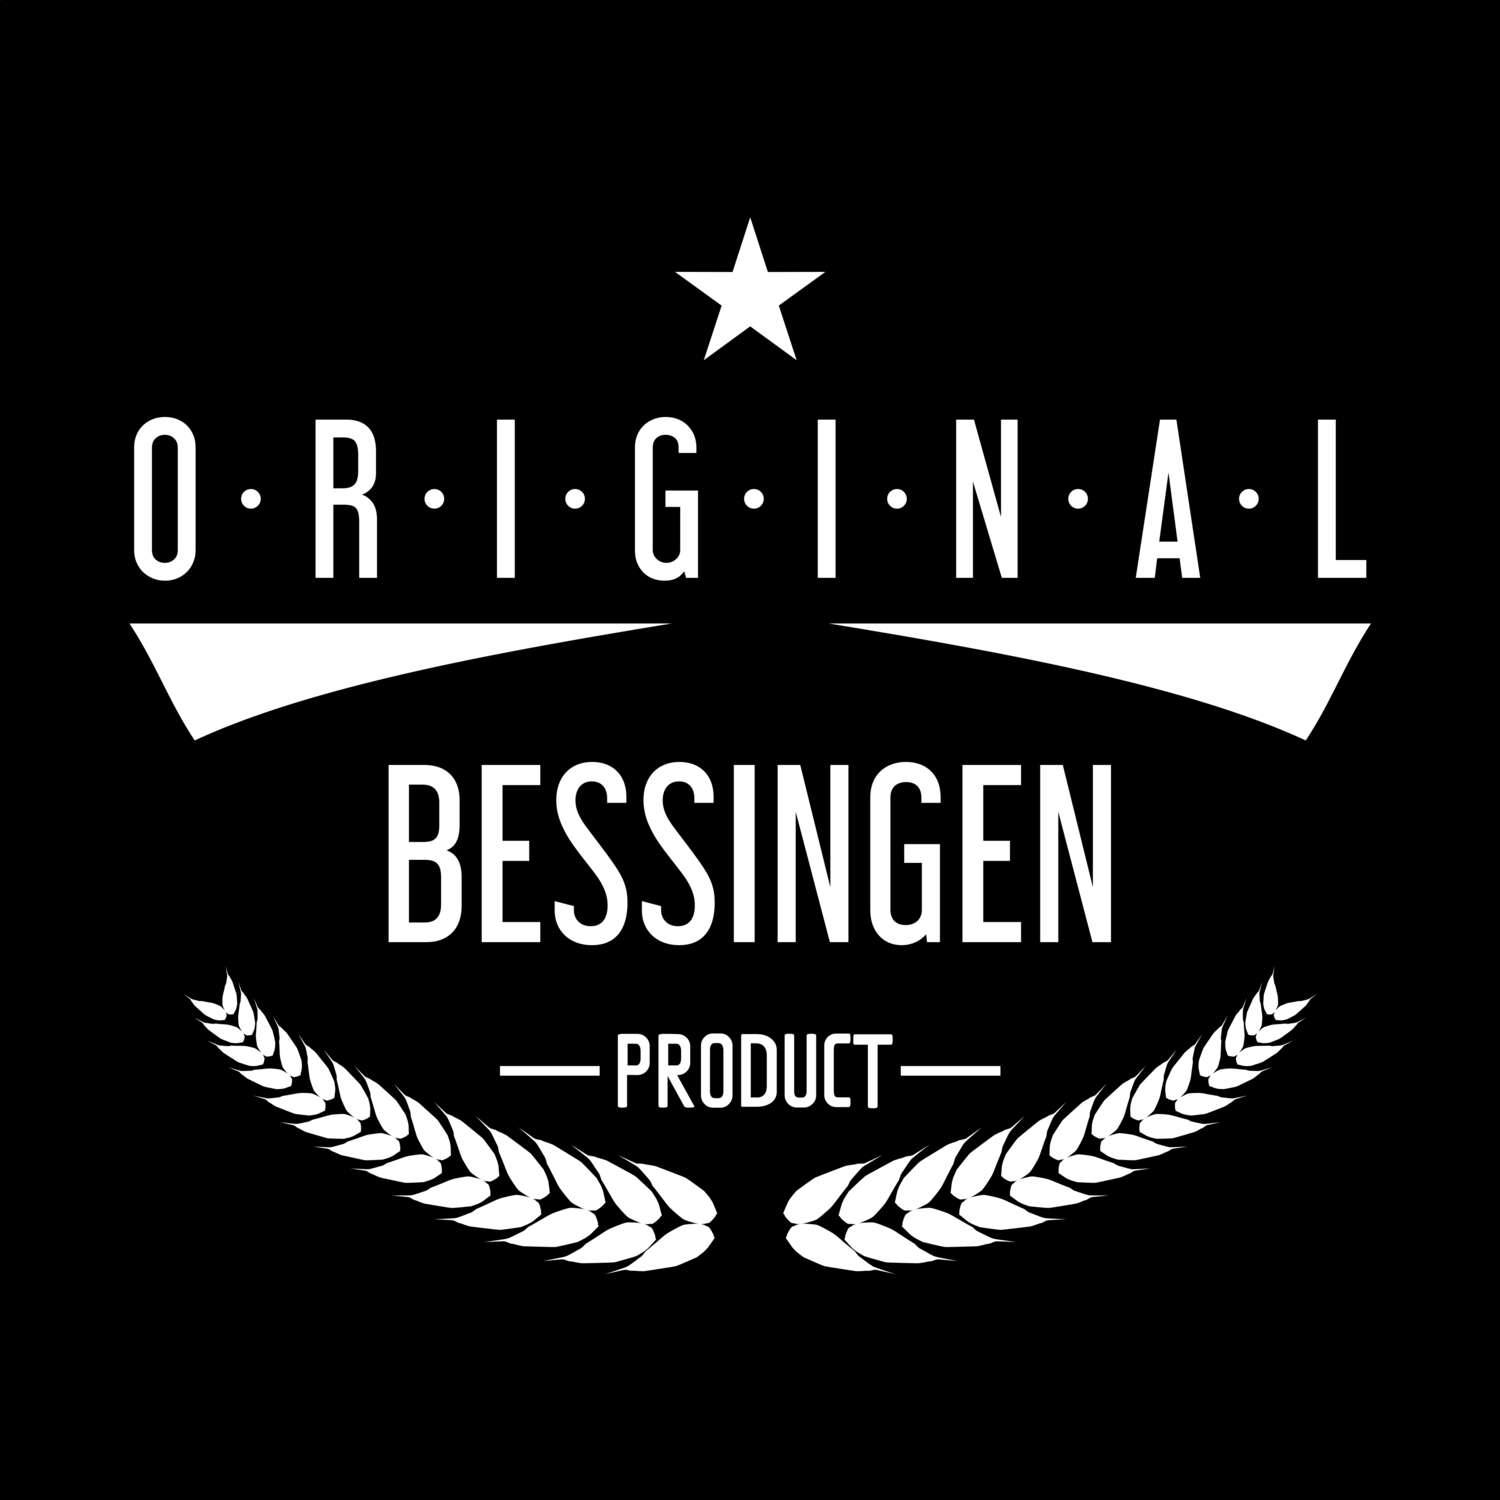 Bessingen T-Shirt »Original Product«